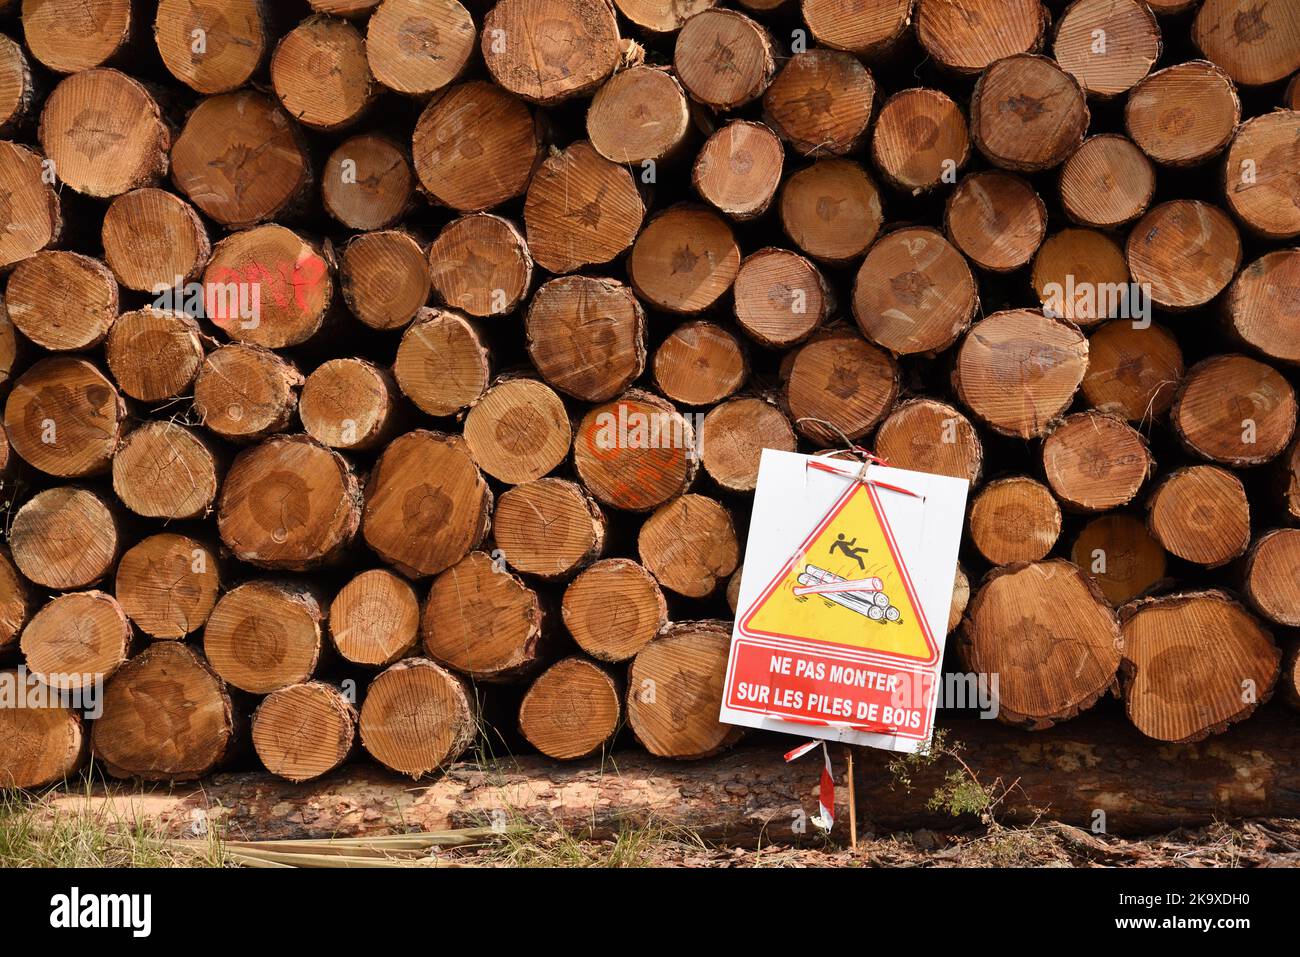 Schnittholz oder gestapeltes Holz aufgeschichtet bereit für die Verarbeitung oder Lieferung an den Holzhof mit Gefahrenschild oder Warnung, nicht auf die Protokolle zu klettern Frankreich Stockfoto